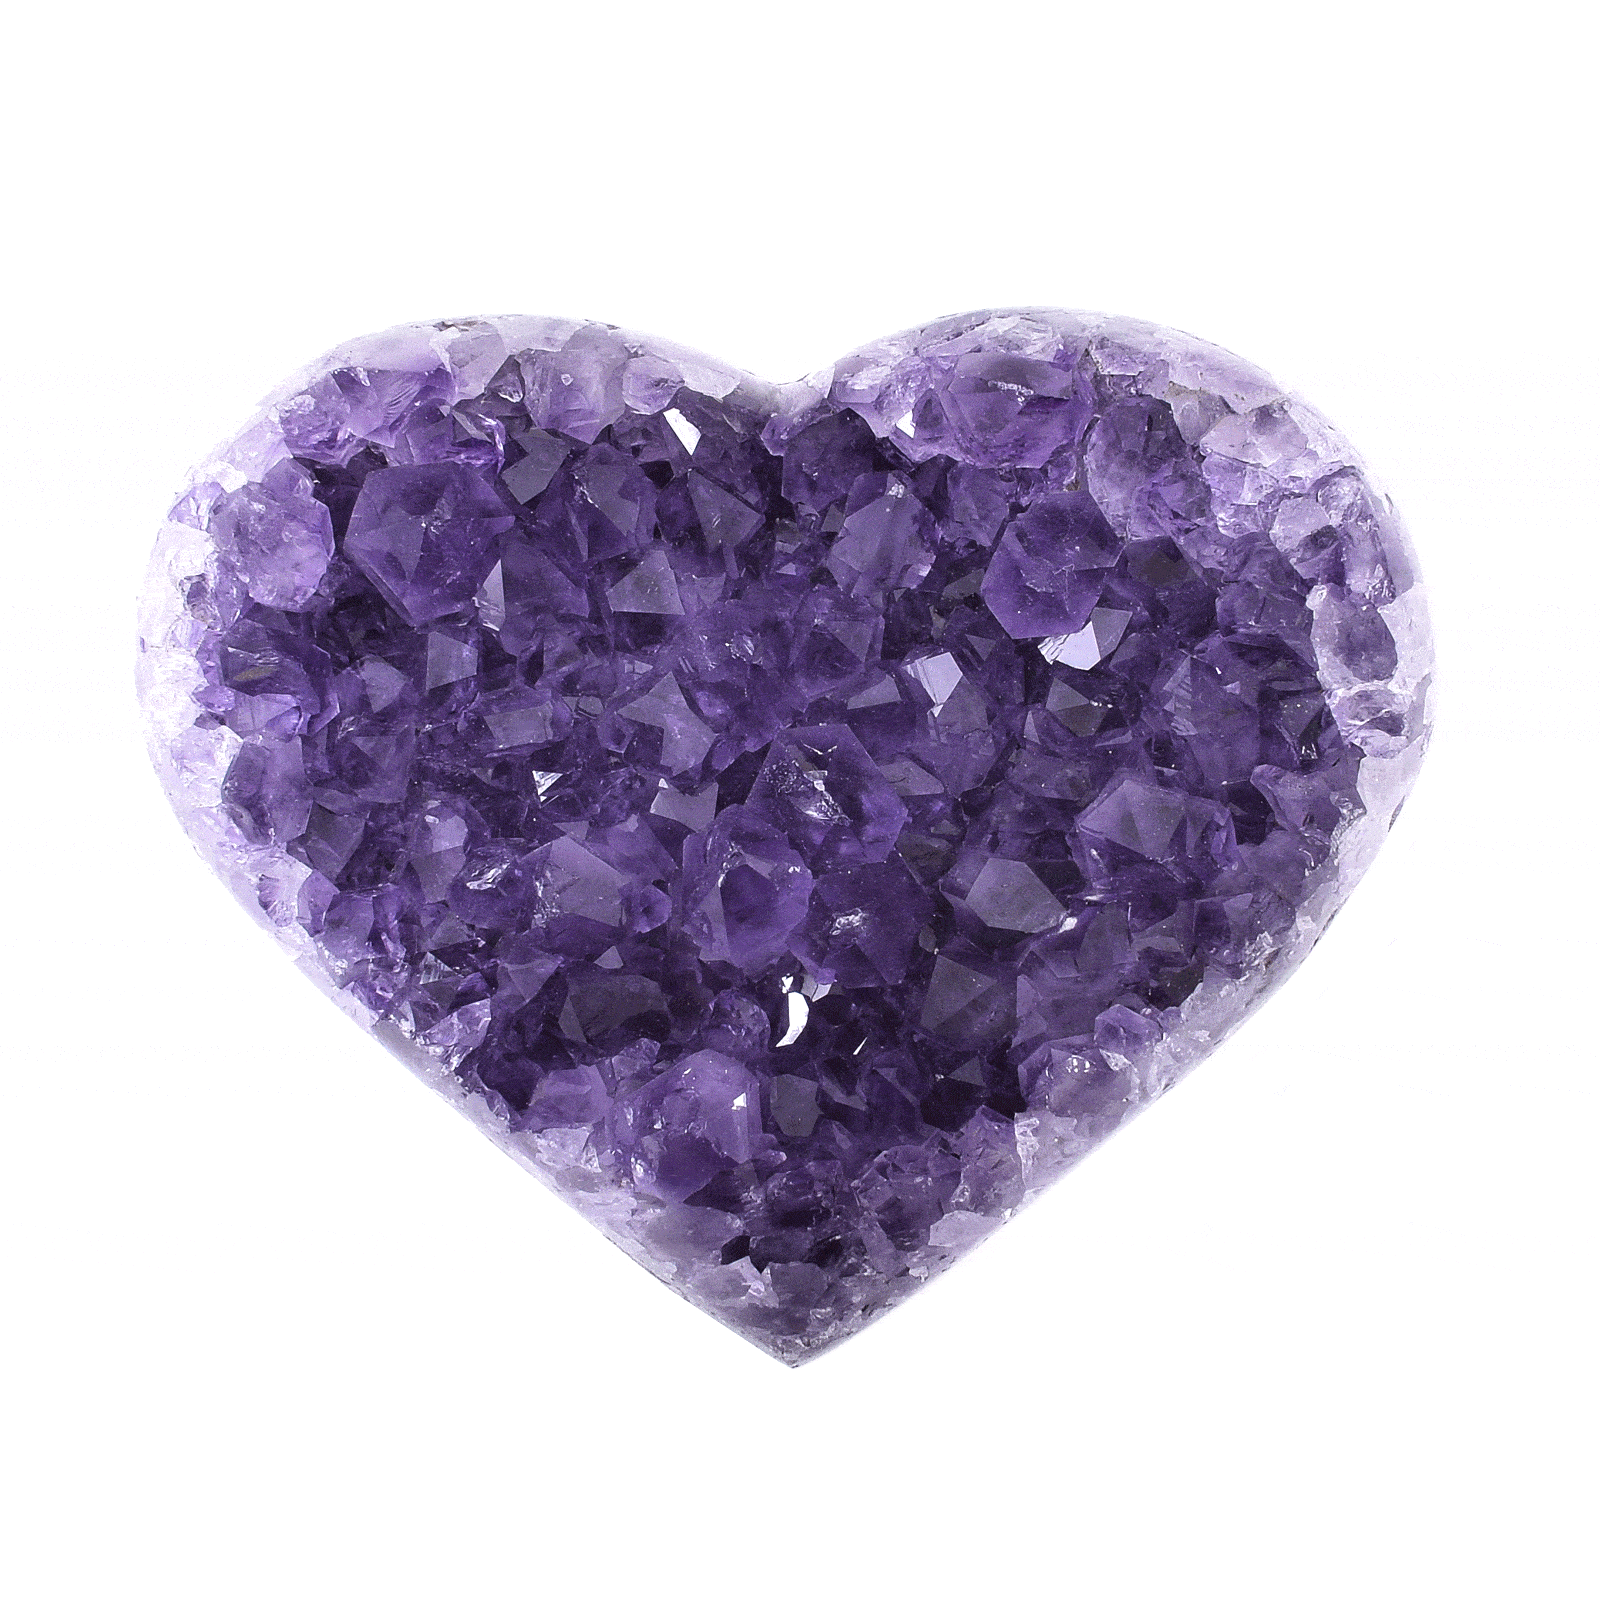 Φυσική πέτρα Αμεθύστου σε σχήμα καρδιάς, μεγέθους 9cm. Αγοράστε online shop.